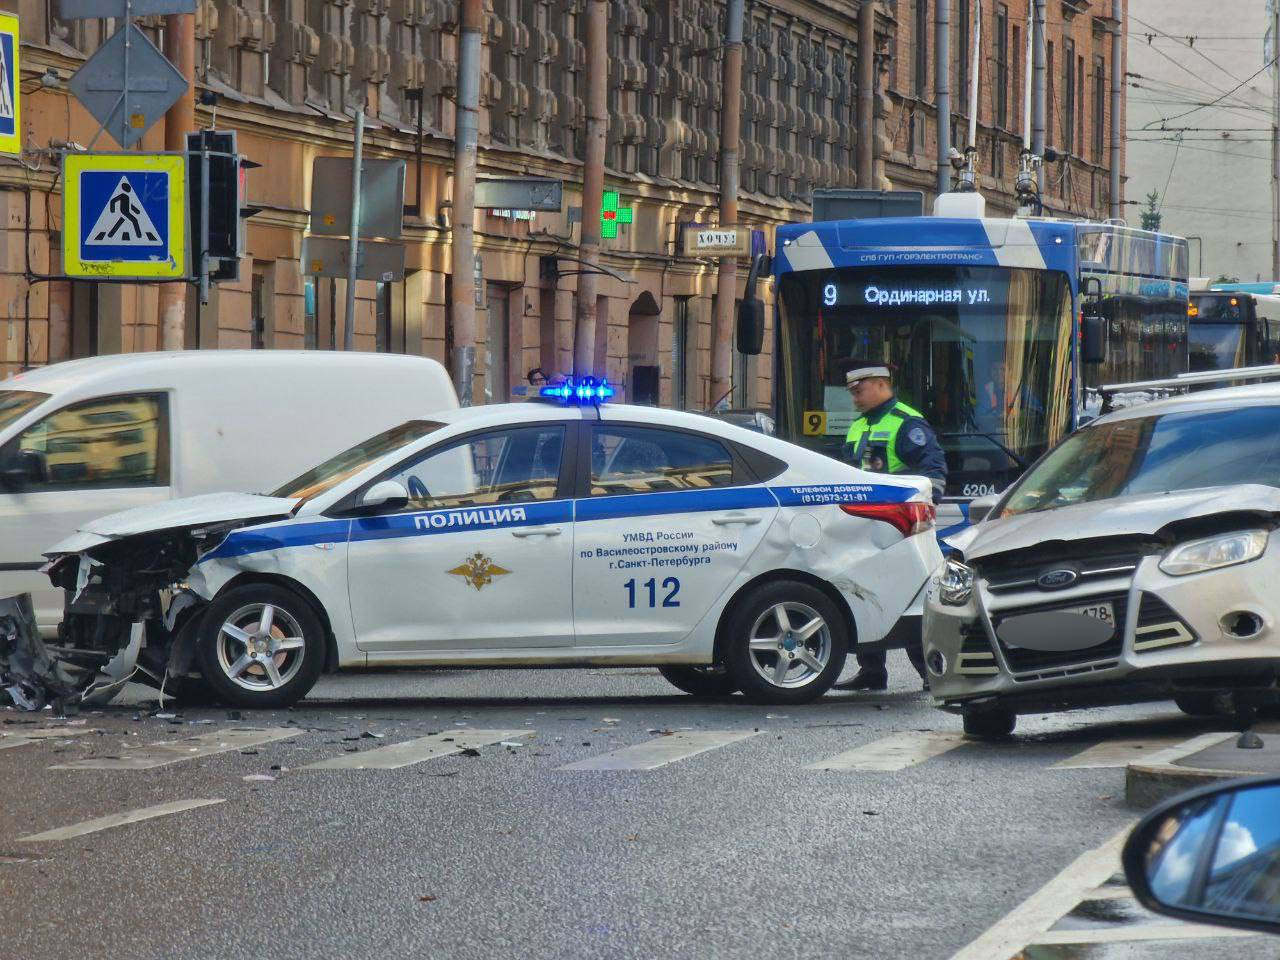 Чуть не попал в аварию. Полицейская машина. Машина "полиция". Полицейские машины Санкт-Петербурга. Разбитые полицейские машины.